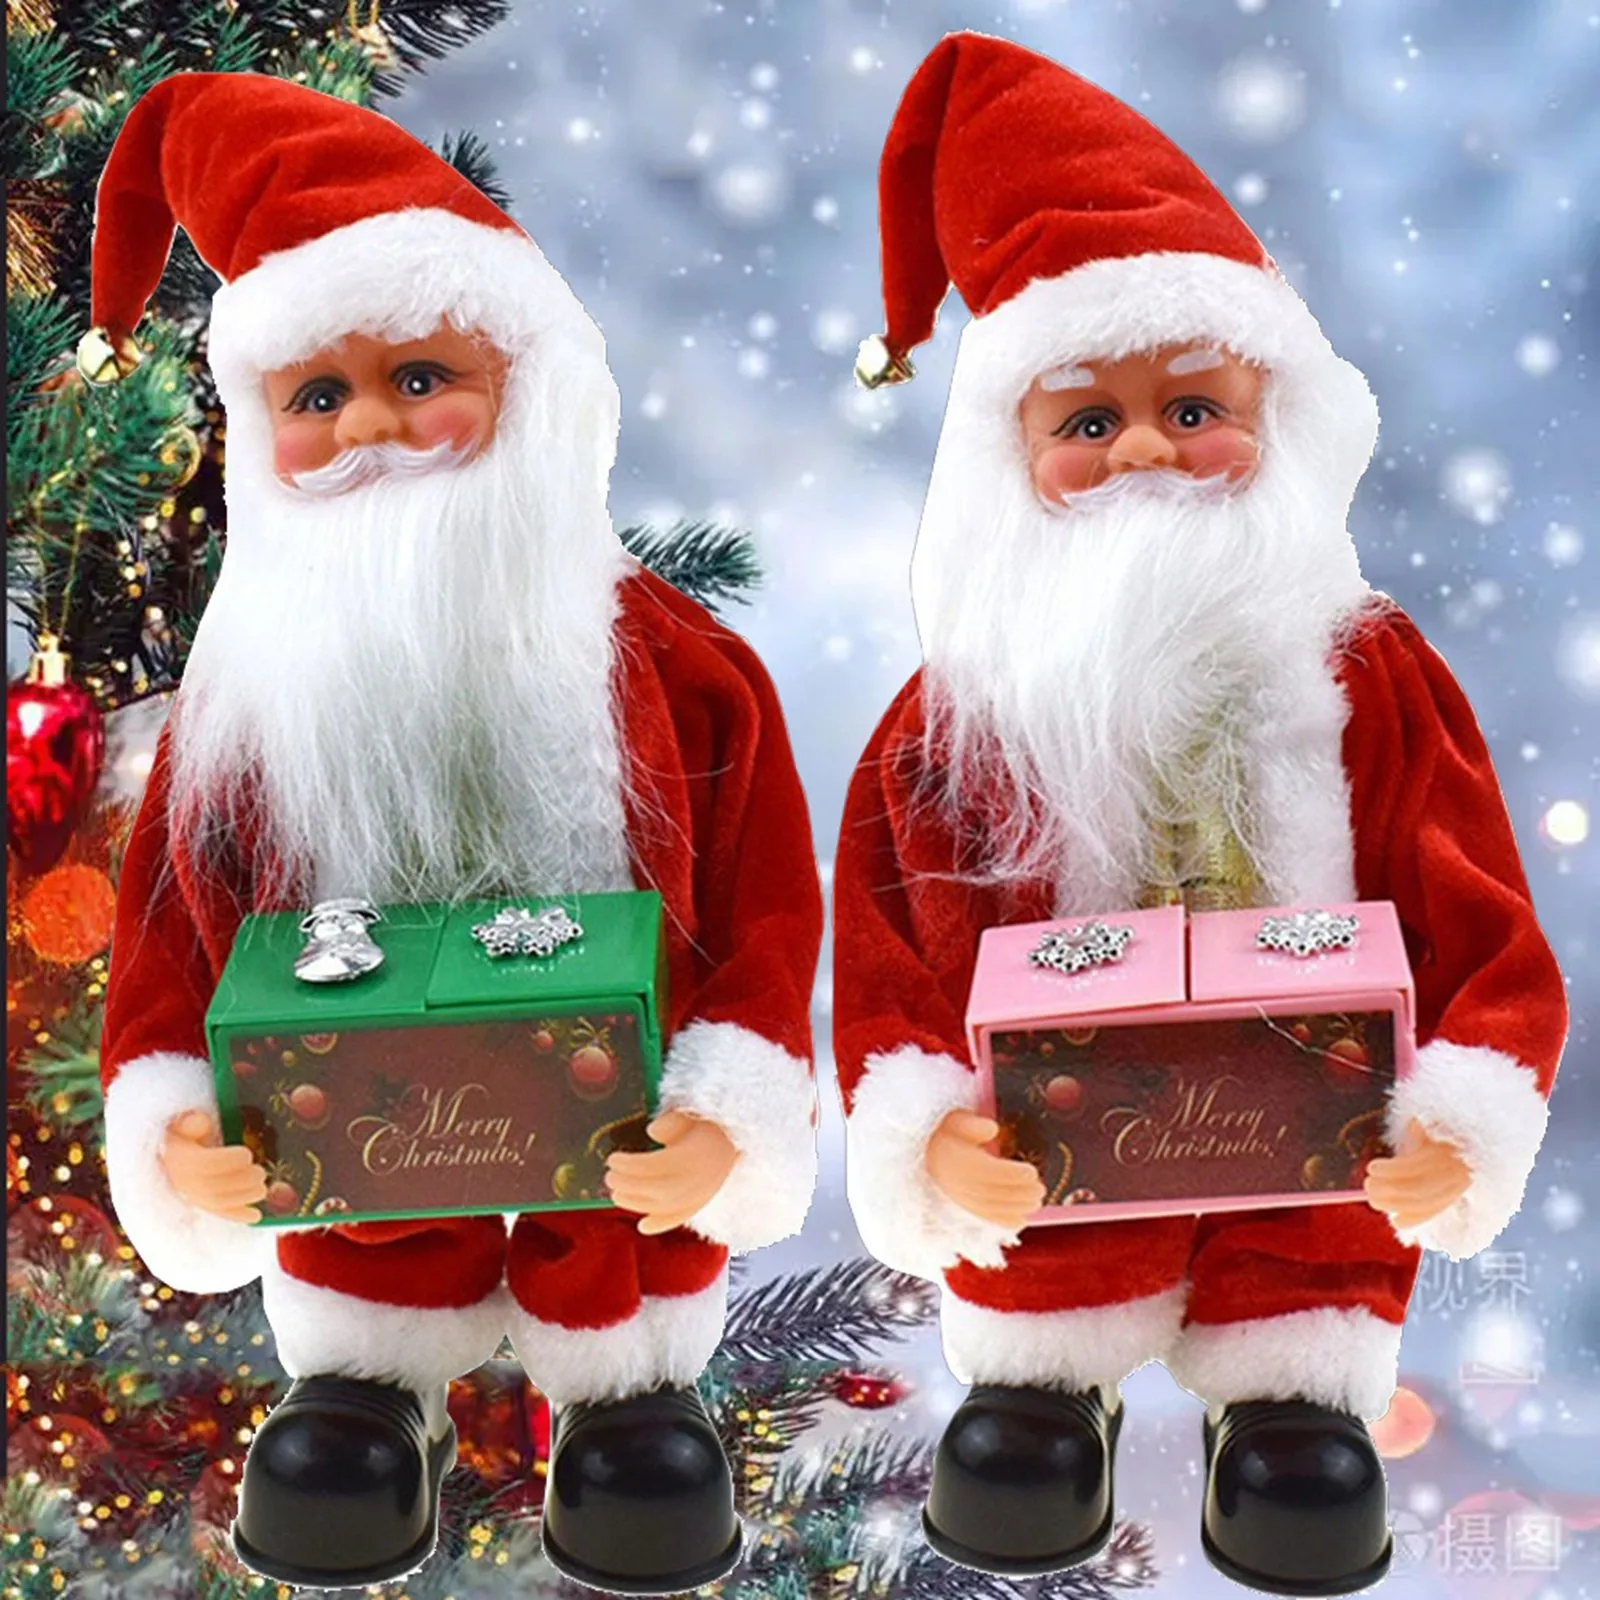 

Подарочная электронная музыкальная шкатулка Санта-Клаус, плюшевые игрушки, рождественские куклы, музыкальная шкатулка для пения и танцев, подарки для детей